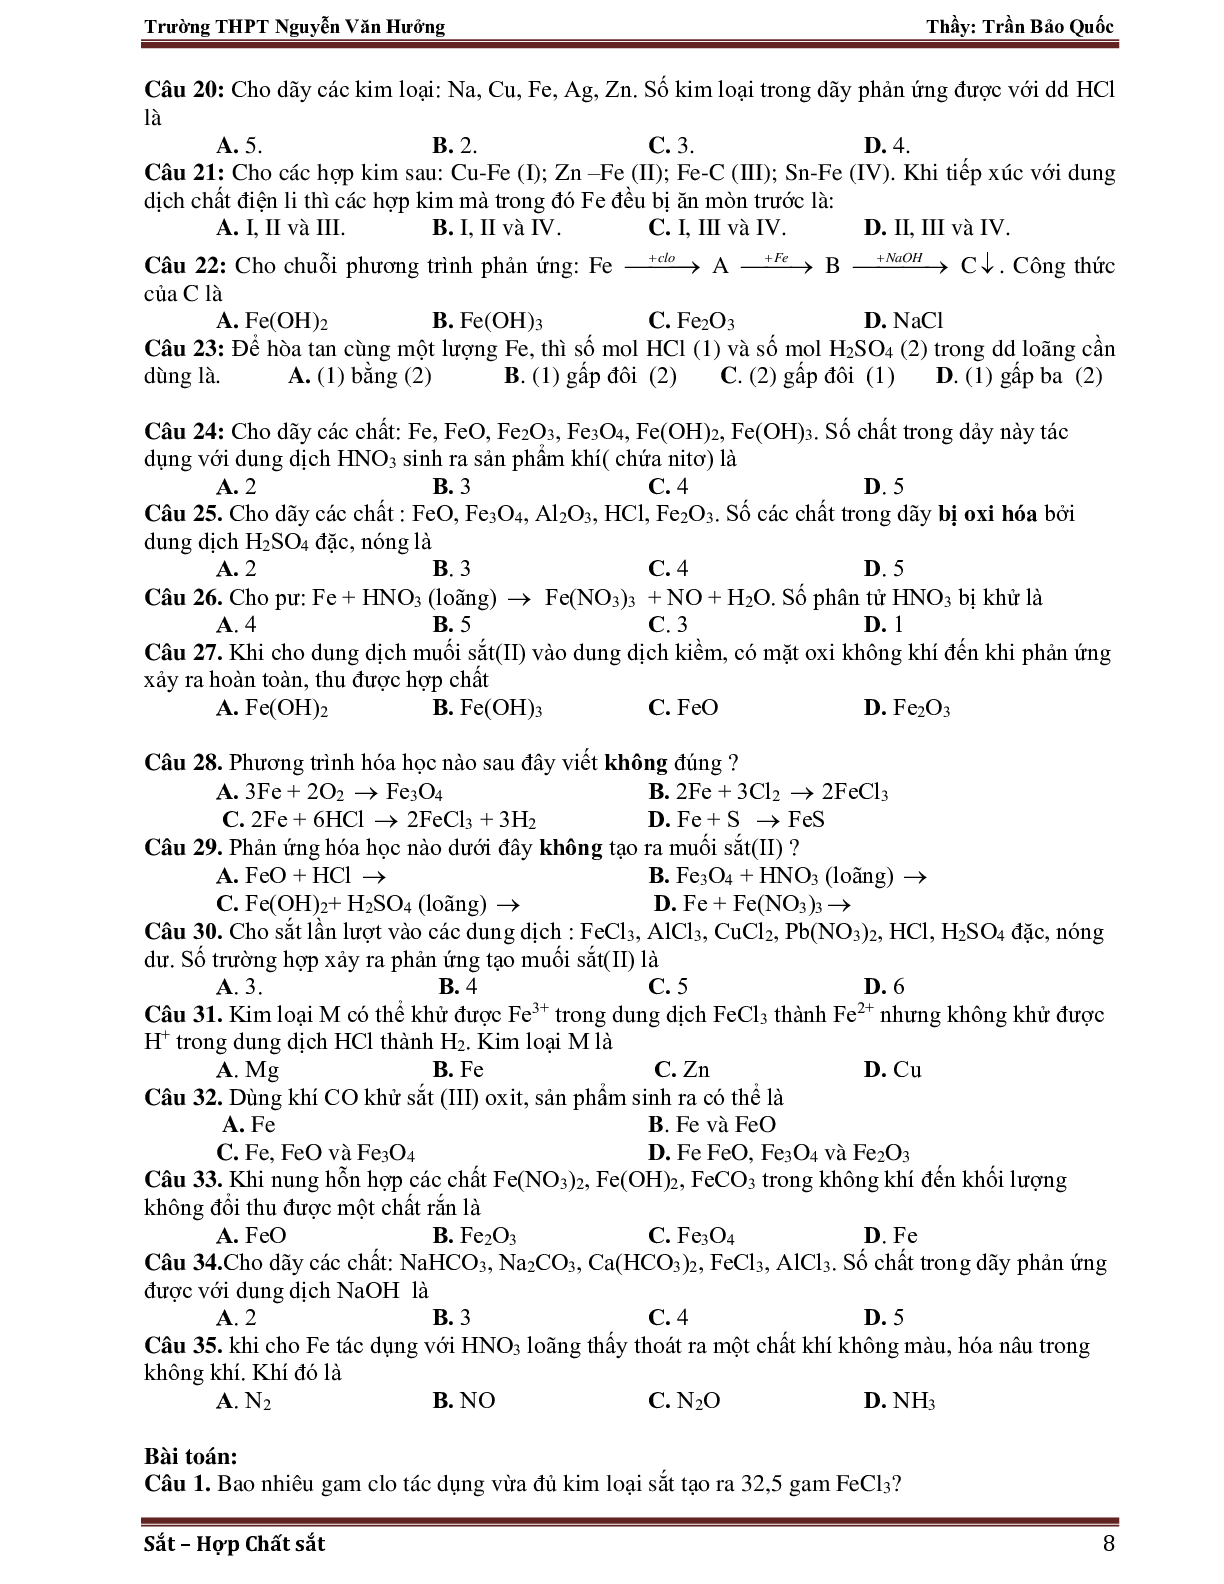 Giáo án Hóa học 12 bài 37: Luyện tập về Sắt mới nhất (trang 8)